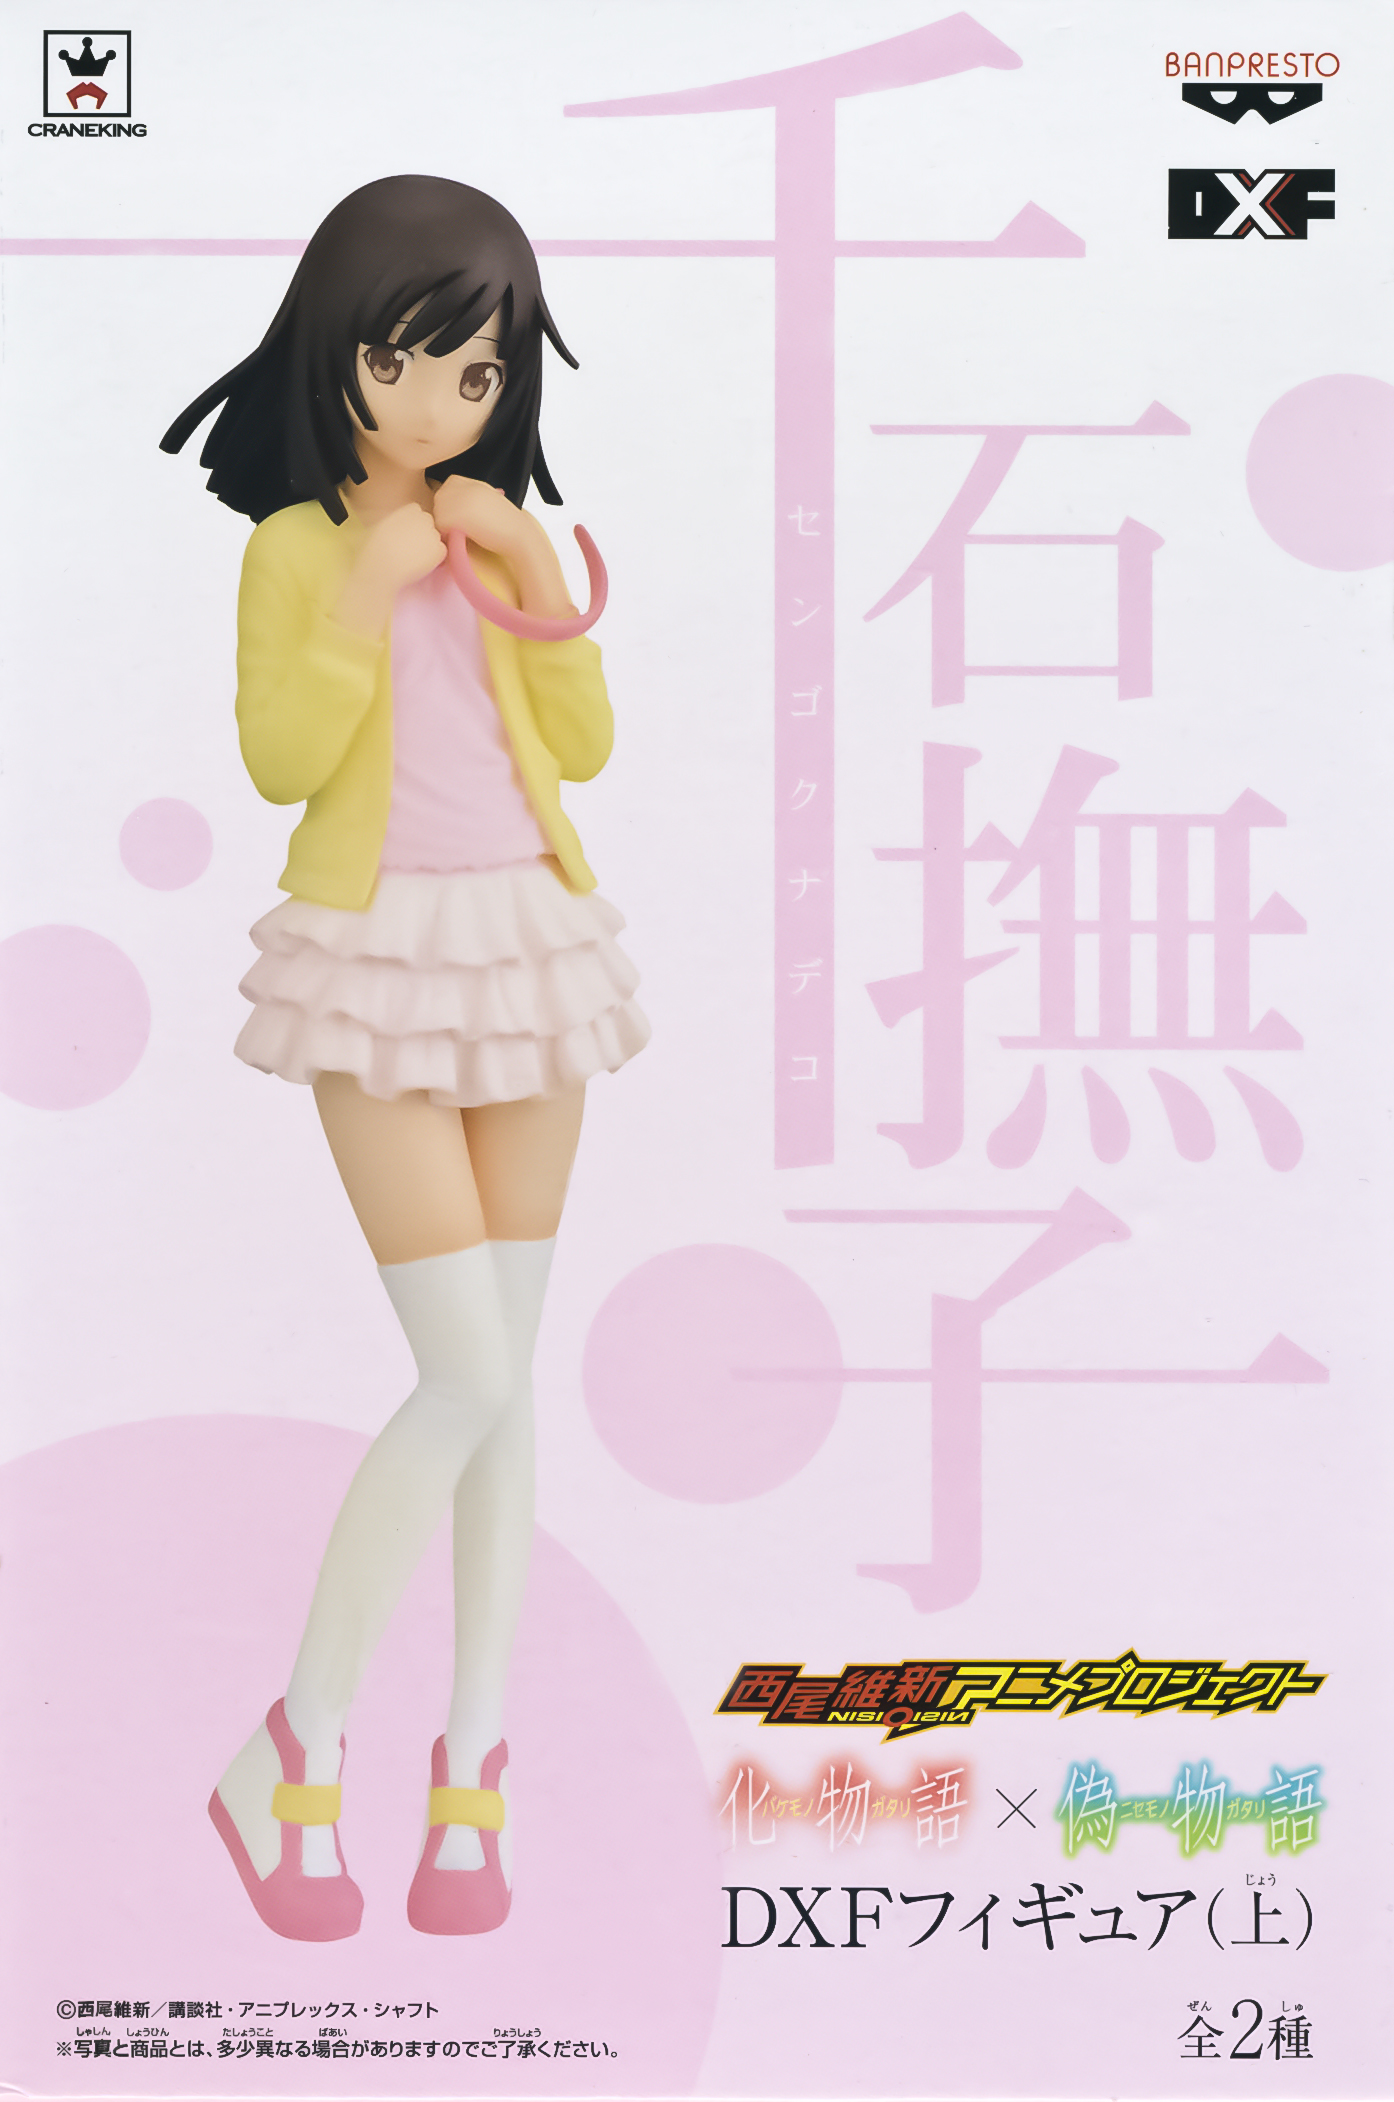 Nadeko Sengoku, DXF Figure, Bakemonogatari, Banpresto